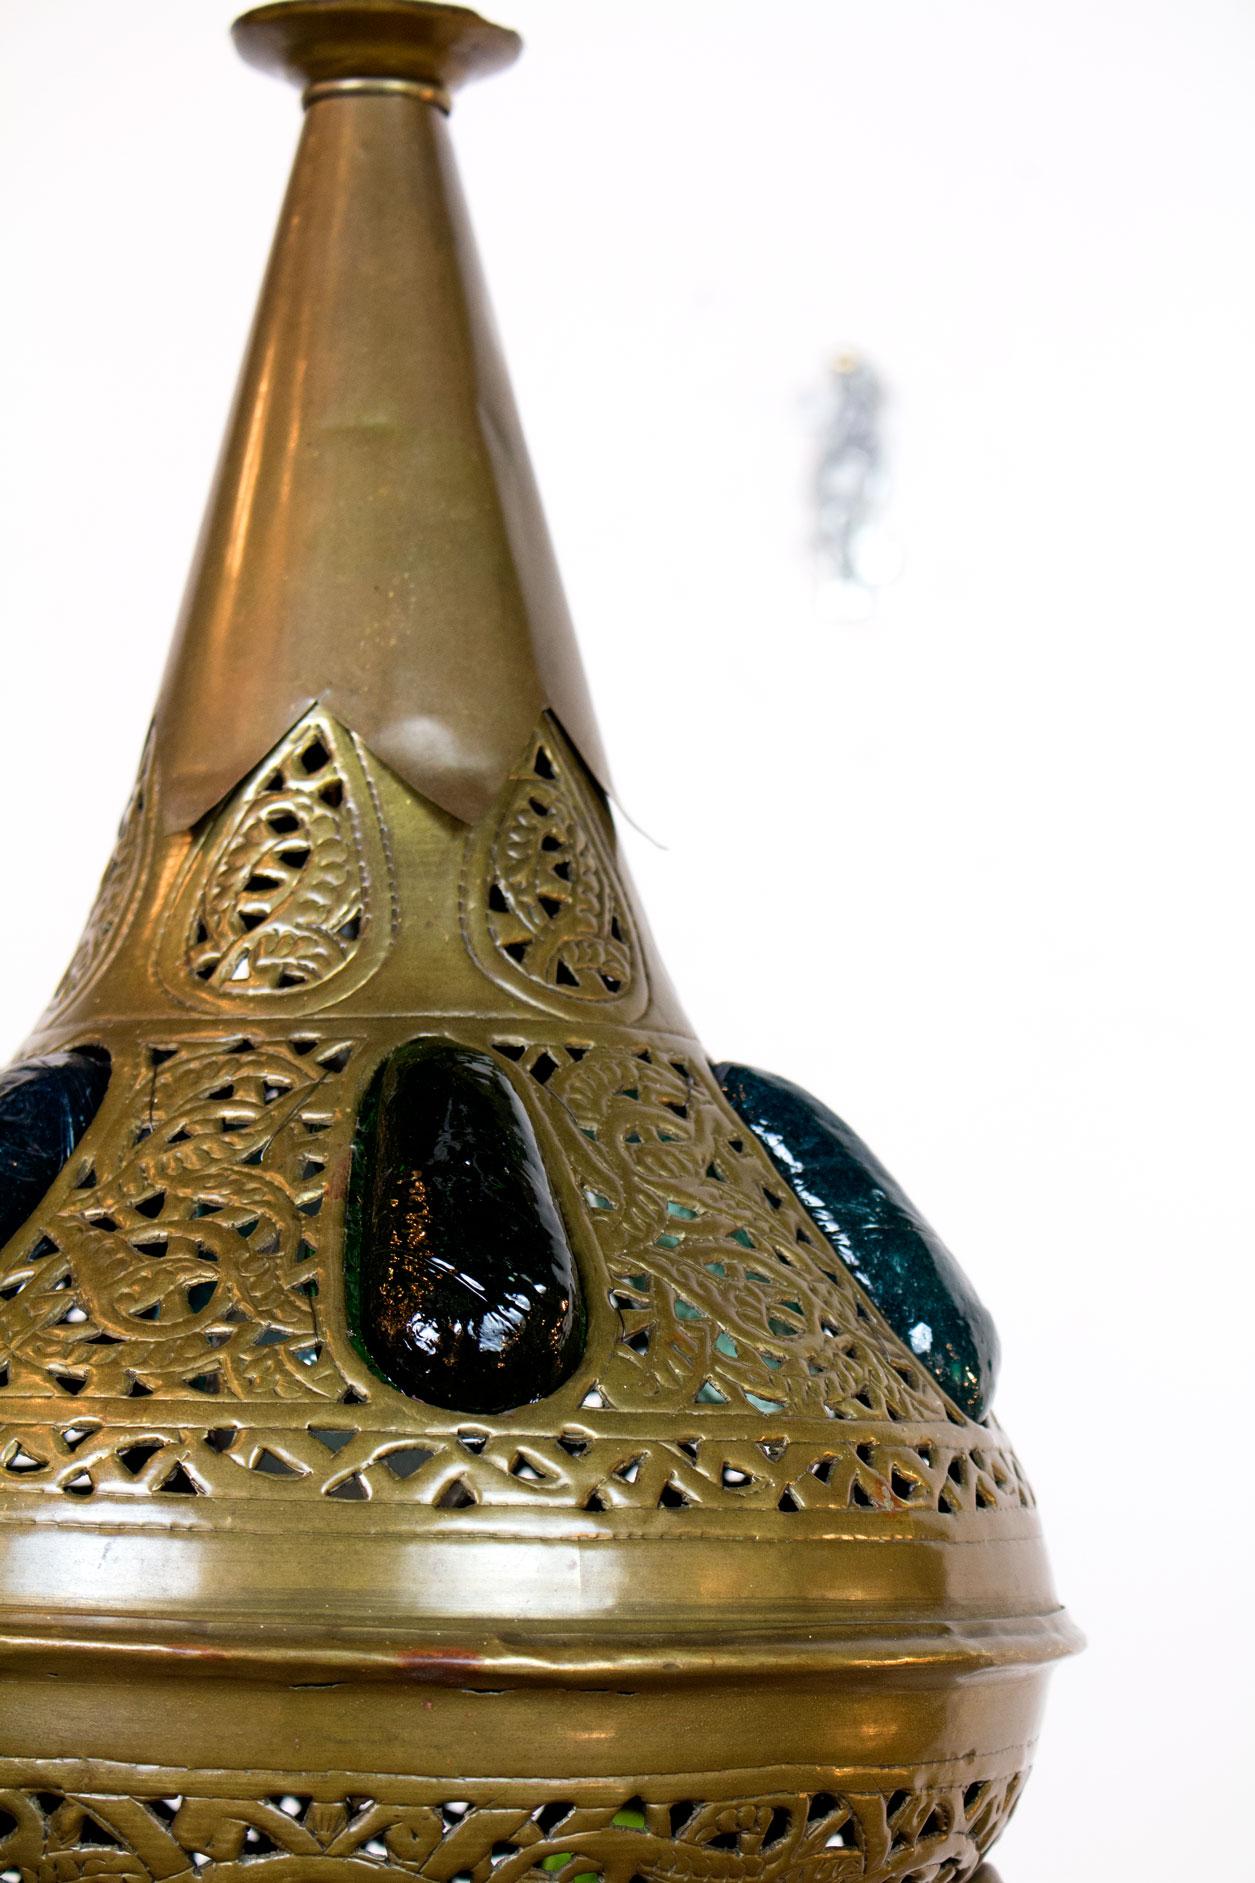 Marokkanische Pendelleuchte aus geprägtem Messing mit mehrfarbigen großen Glaseinsätzen. Glas ist ein dicker, rauer, runder Edelstein, durch den farbiges Licht scheint, wenn er beleuchtet wird. 

Abmessungen: 
Höhe: 40